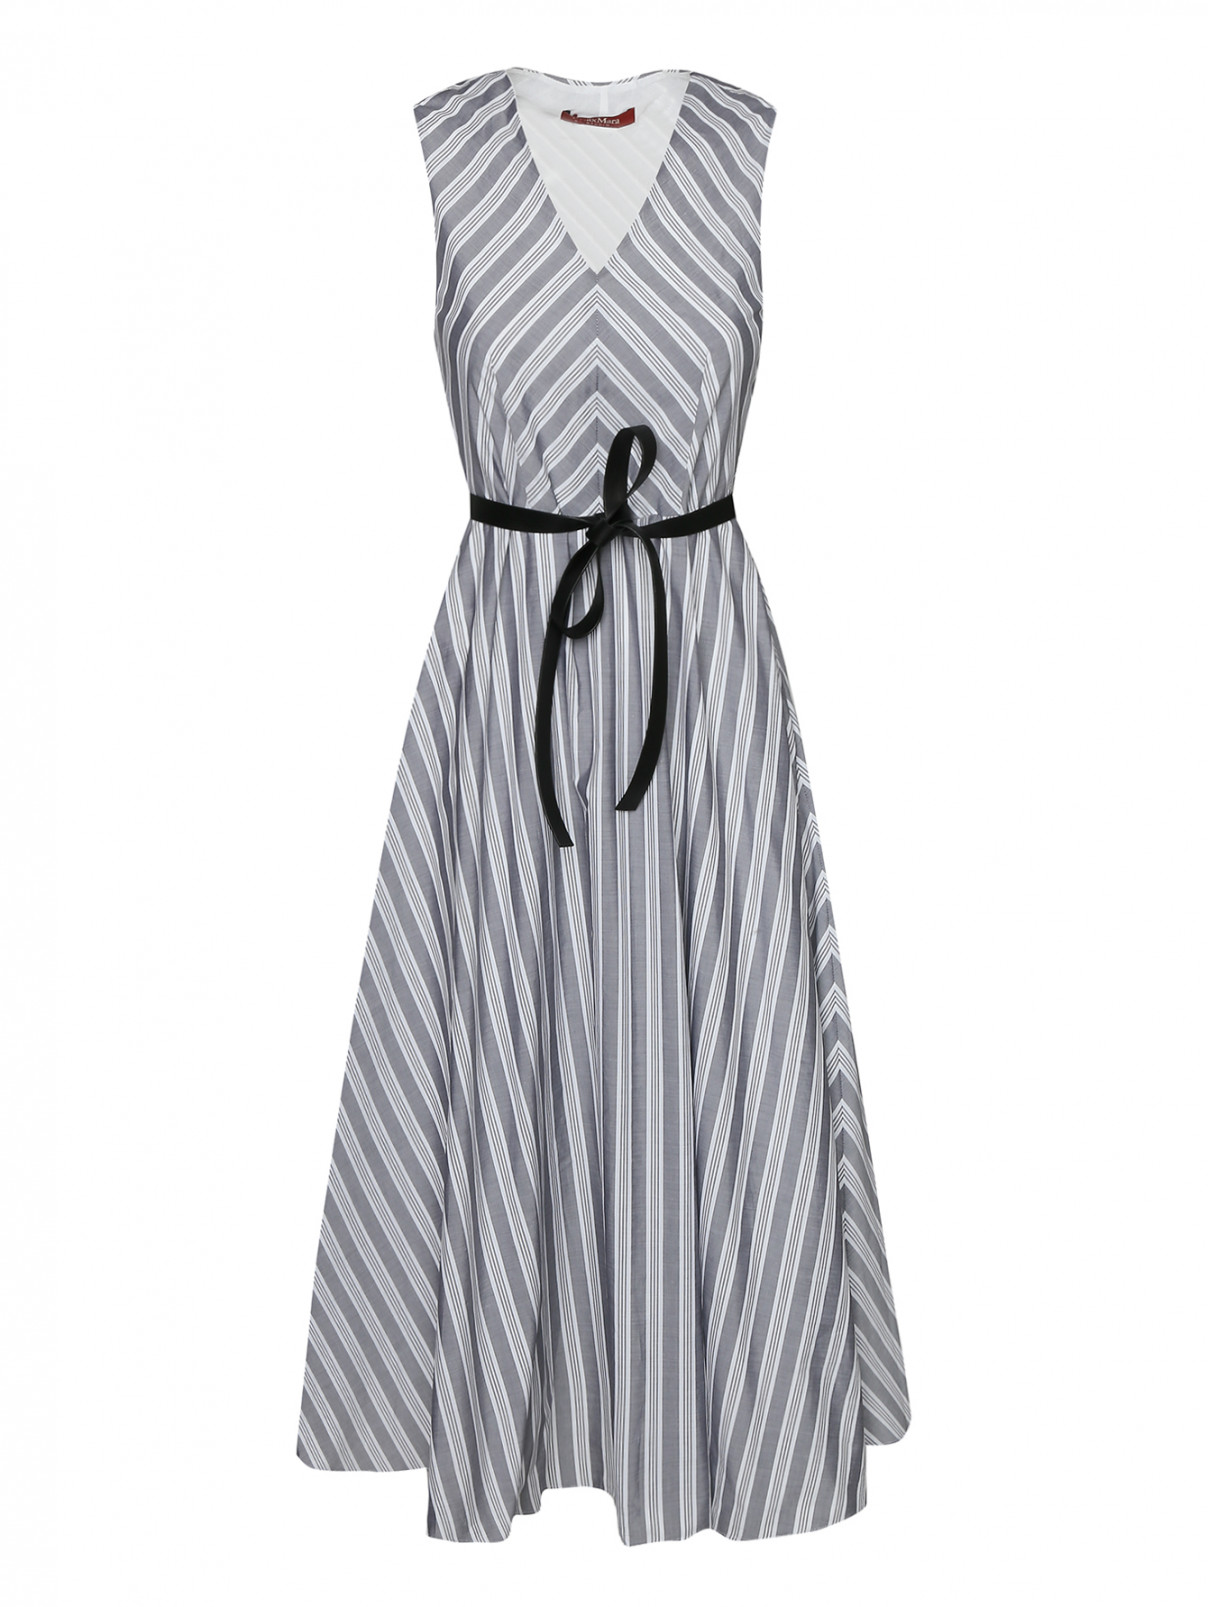 Платье из хлопка в полоску Max Mara  –  Общий вид  – Цвет:  Серый